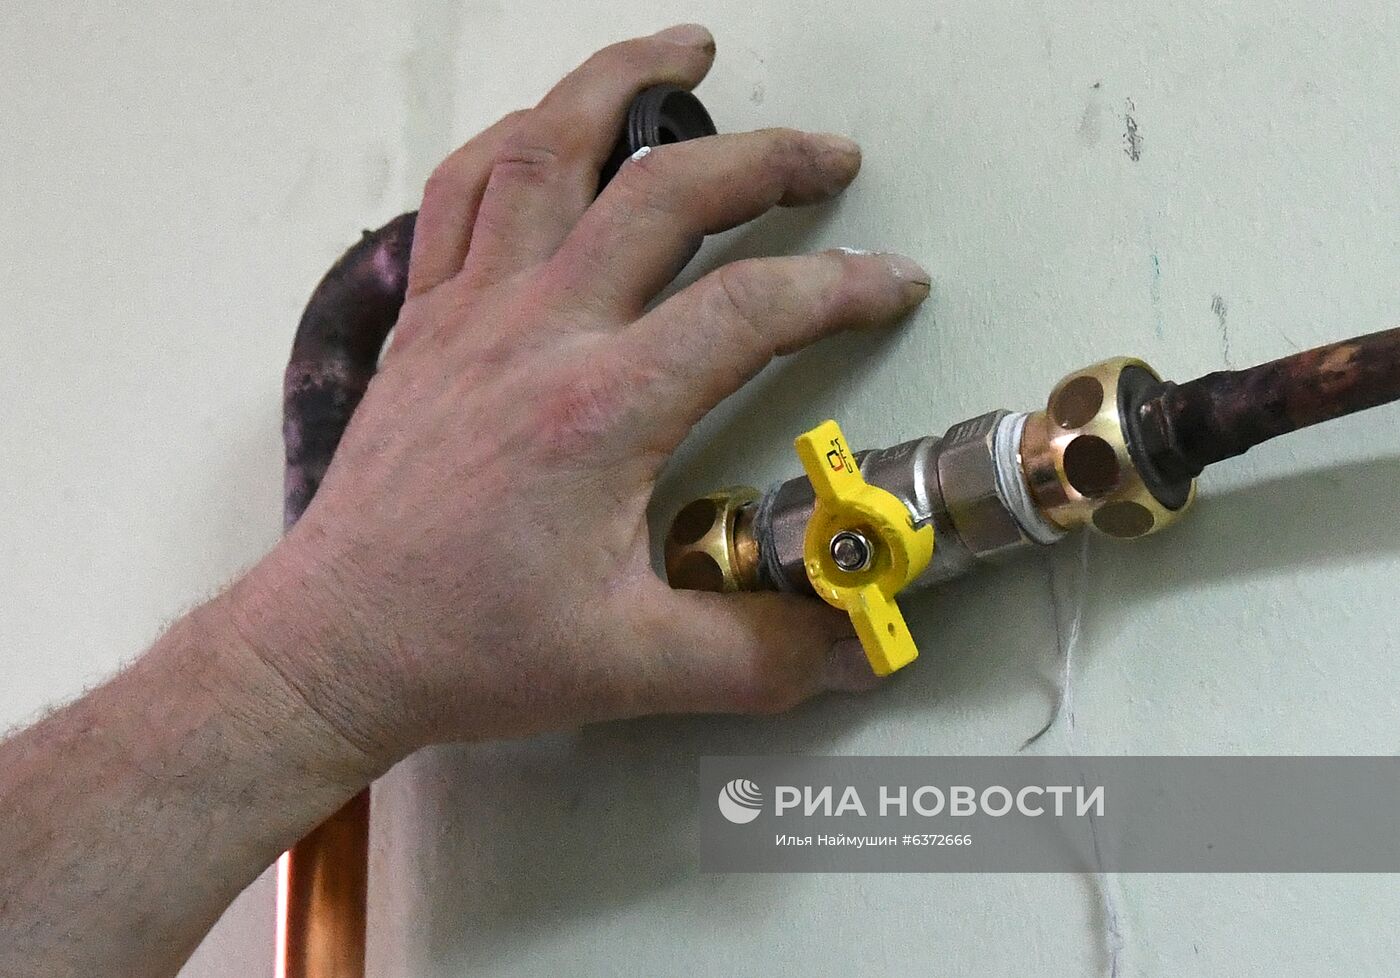 Подготовка к открытию ковид-госпиталя в Красноярске